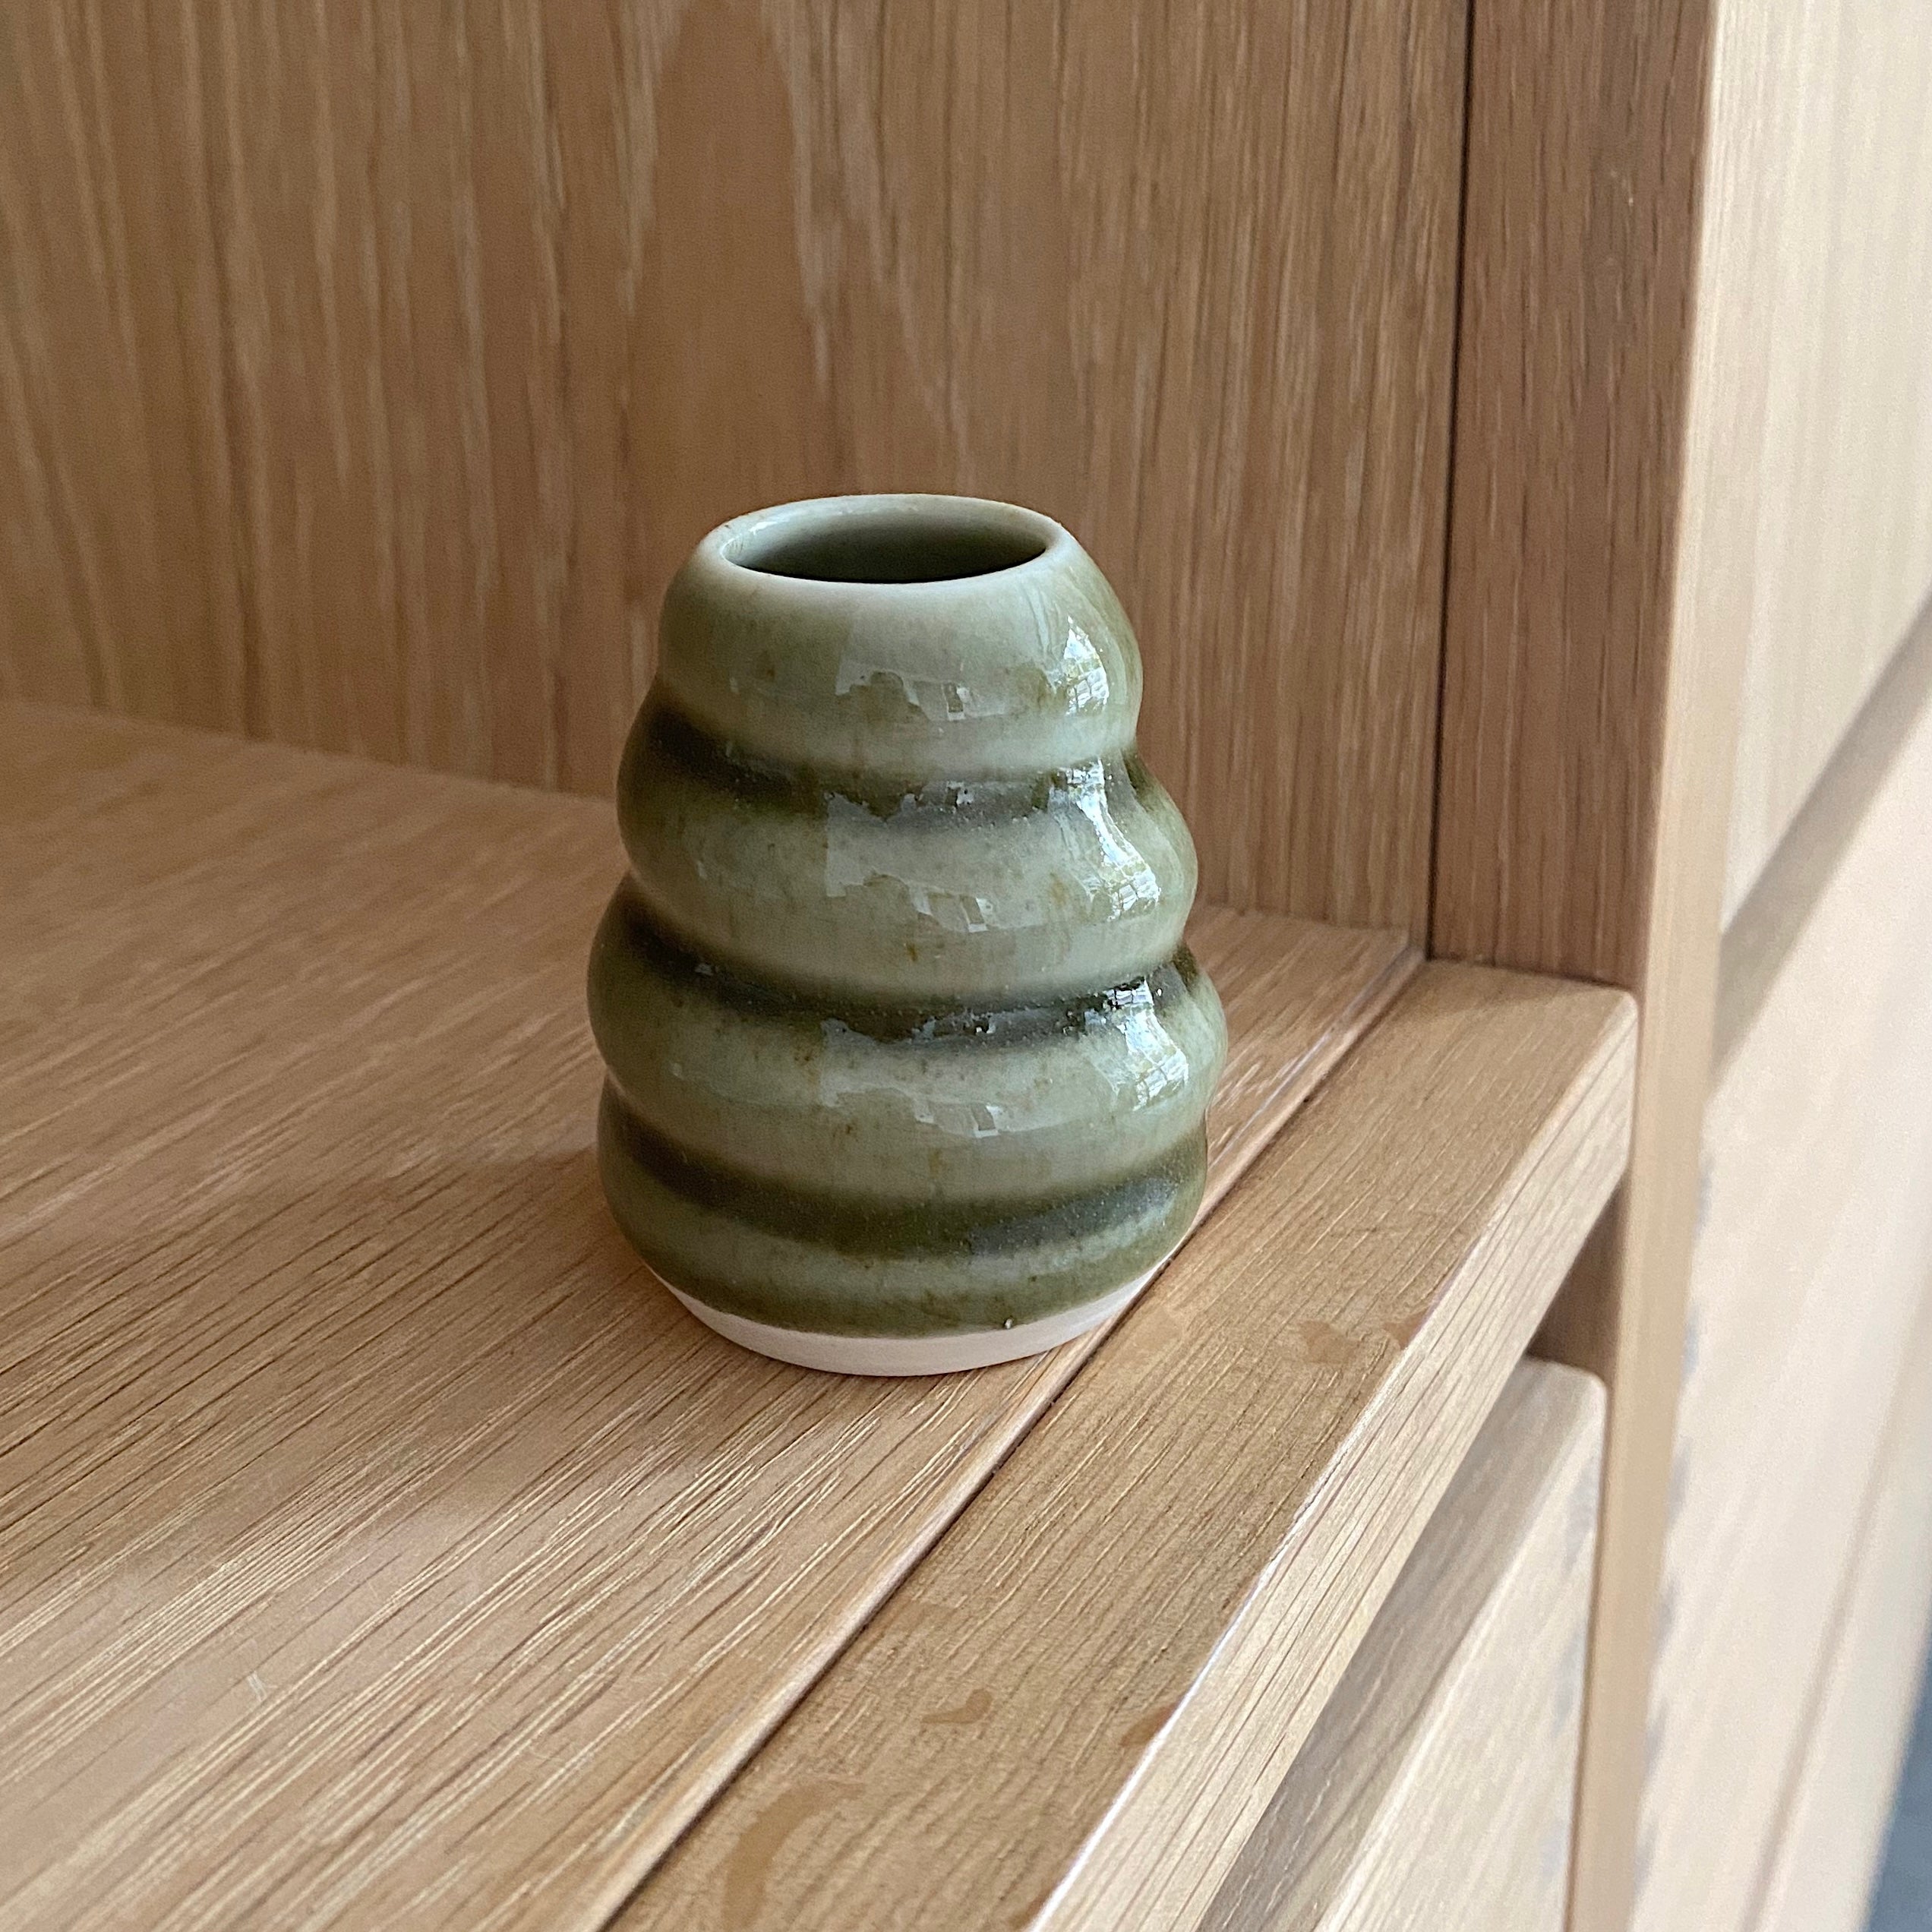 lille haanddrejet keramikvase i mosgroen til små stilke fra haven. vasen har et snoet spiraldesign og er i smuk groen glasur